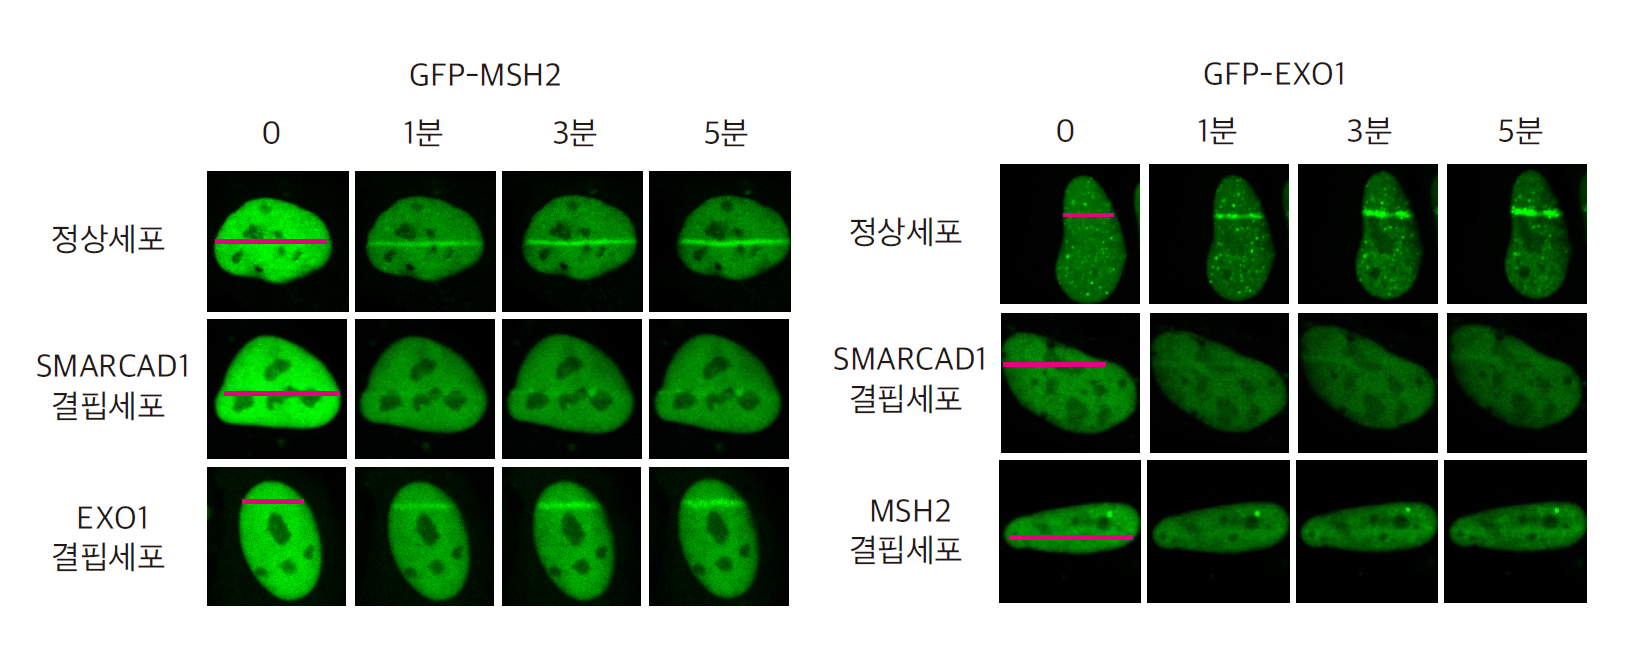 [그림 2] SAMRCAD1-MSH2-EXO1의 순서로 DNA 이중나선절단 부위로 접근
            정상세포에 355nm 레이저를 조사하여 DNA 이중나선절단 손상 부위를 만들면 (빨간색 선) 시간이 지남에 따라 형광단백질로 표지된 MSH2와 EXO1 단백질이 손상 부위로 이동하는 것을 확인할 수 있다 (왼쪽 첫 번째 그림-MEH2, 오른쪽 첫 번째 그림-EXO1). 그러나 MSH2의 상위조절 단백질인 SMARCAD1이 결핍된 세포에서는 MSH2의 접근이 억제되지만, MSH2의 하위조절 단백질인 EXO1이 결핍된 세포에서는 MSH2의 접근에 문제가 없는 것을 확인했다 (오른쪽 그림). 또한,  각각 SMARCAD1과 MSH2가 결핍된 세포에서는 EXO1의 접근이 억제됨을 확인했다 (오른쪽 그림). 따라서, DNA 이중나선절단 복구 시 각각의 단백질이 SMARCAD1-MSH2-EXO1 단백질의 순서로 손상 부위에 접근한다는 것을 알 수 있다.